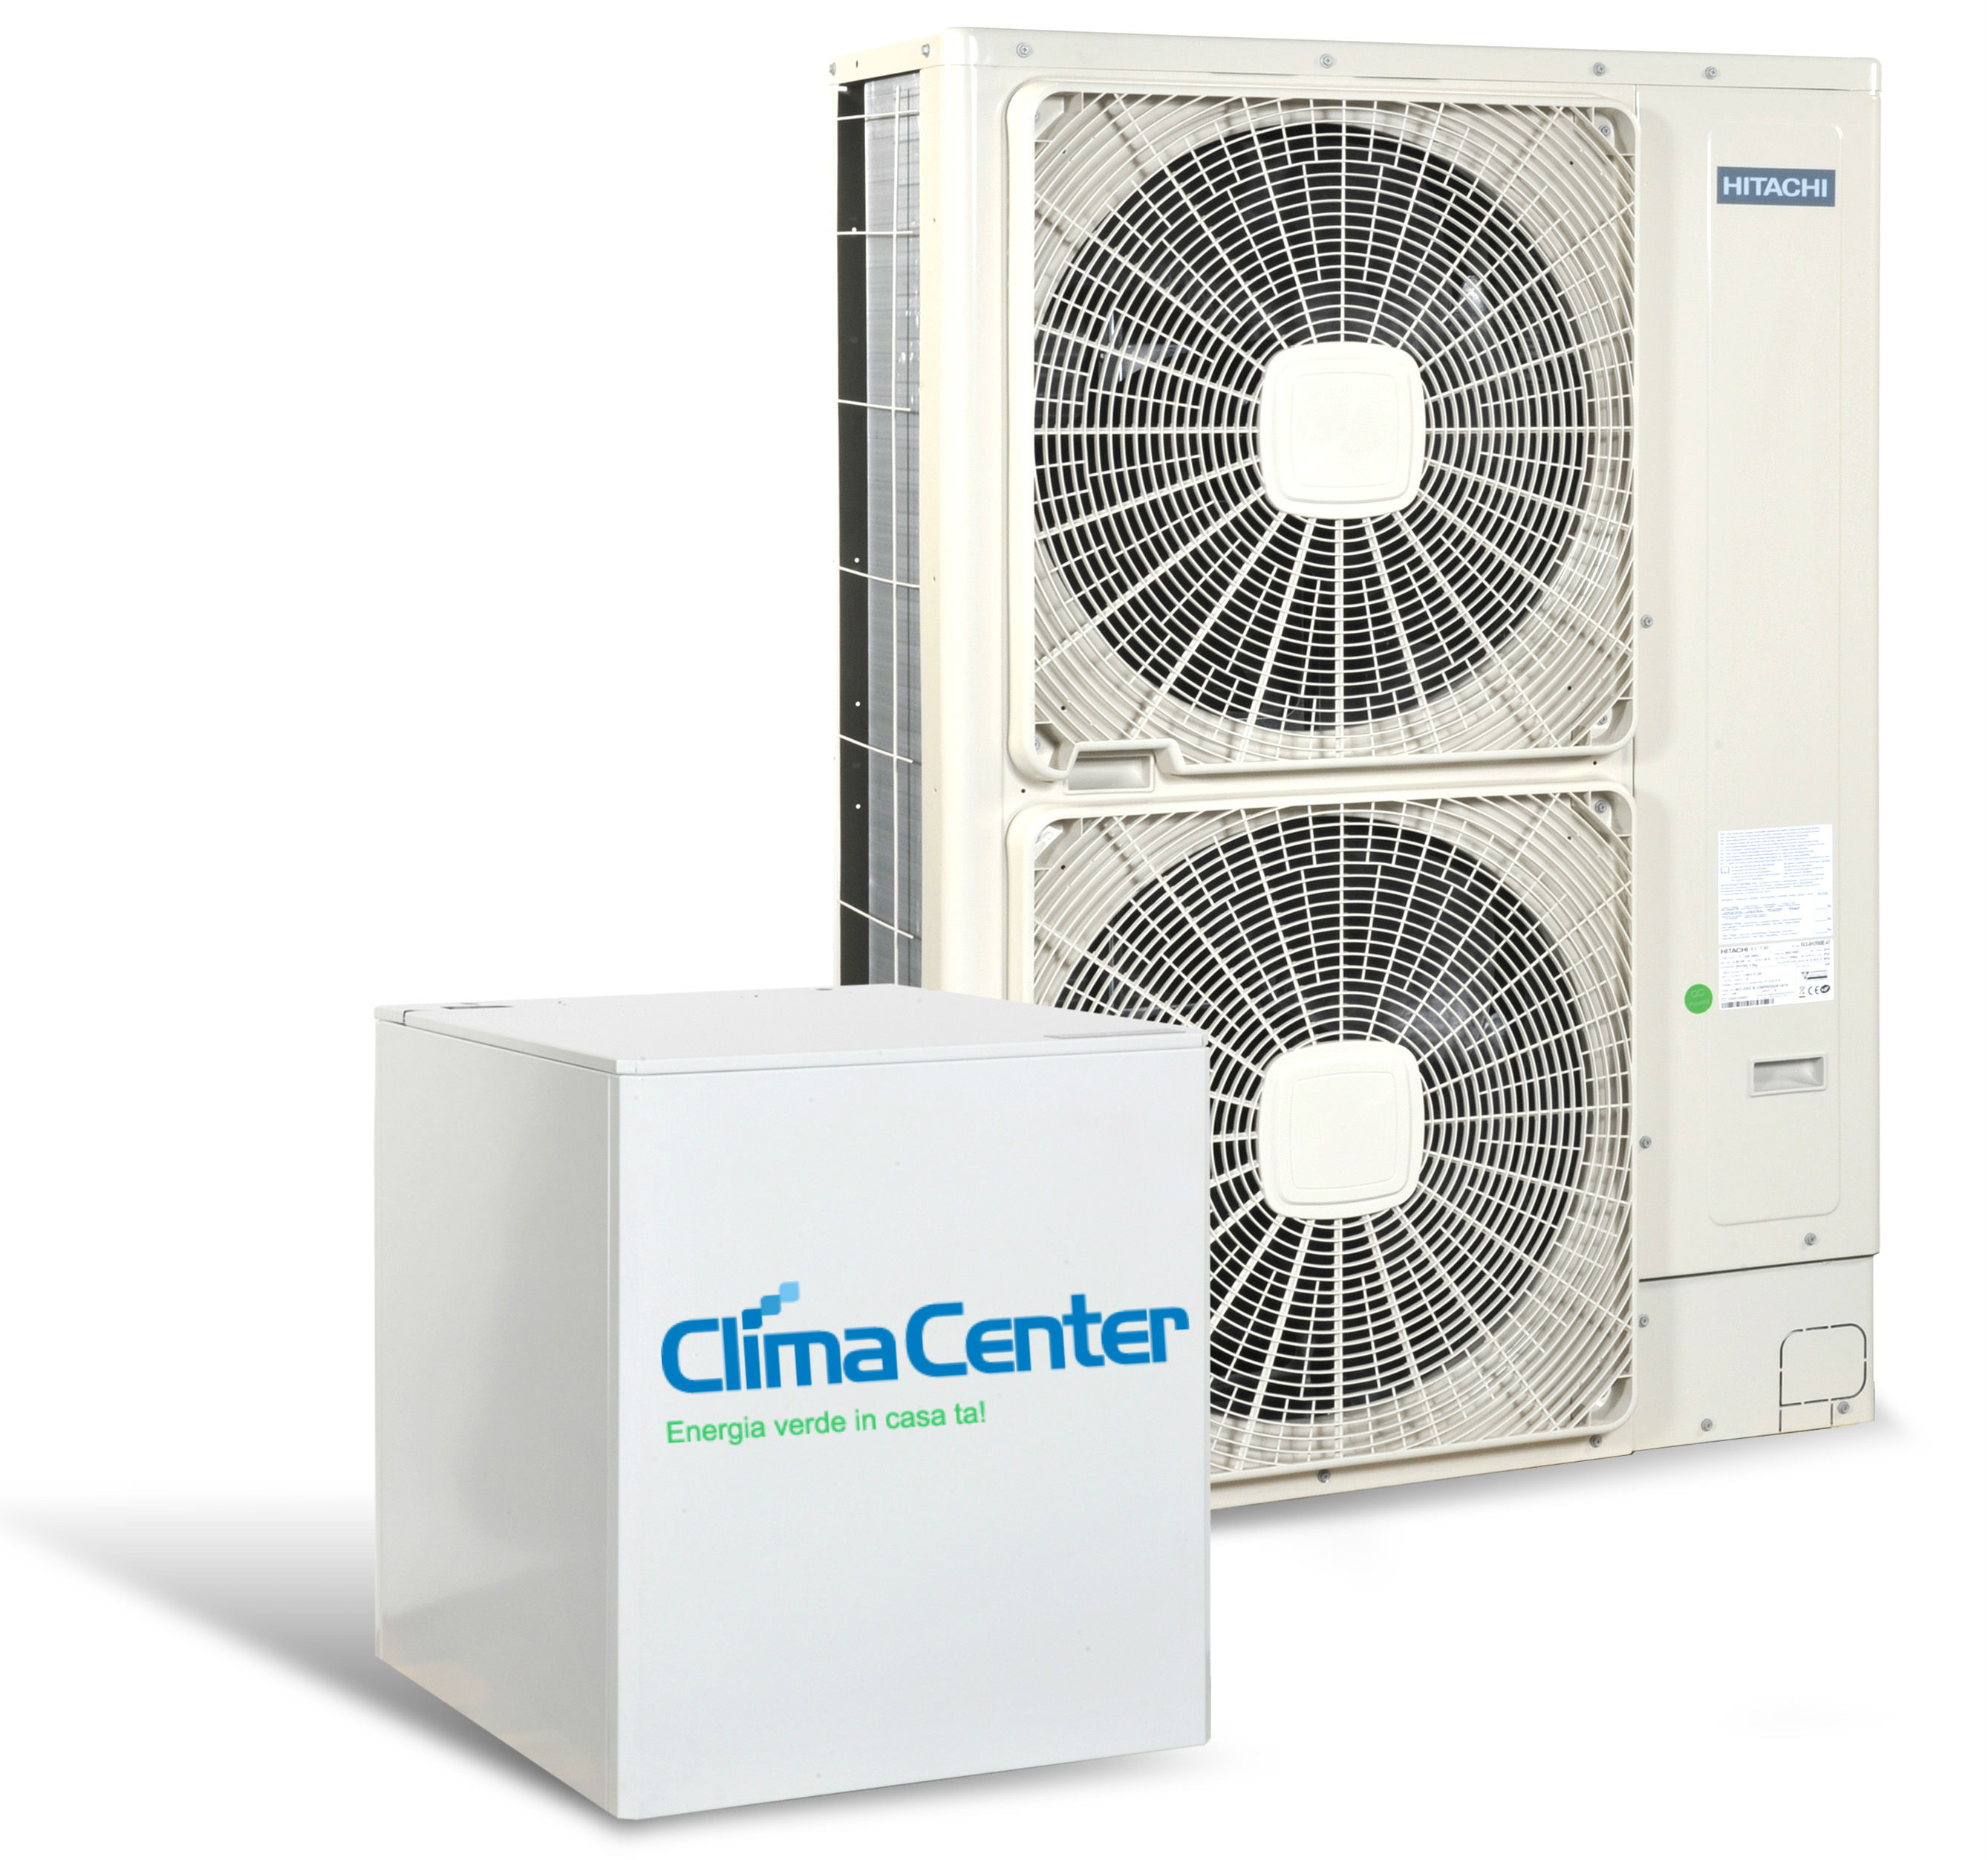 Clima Center anunță scăderi ale costurilor cu până la 60% cu ajutorul pompelor de căldură aer-apă